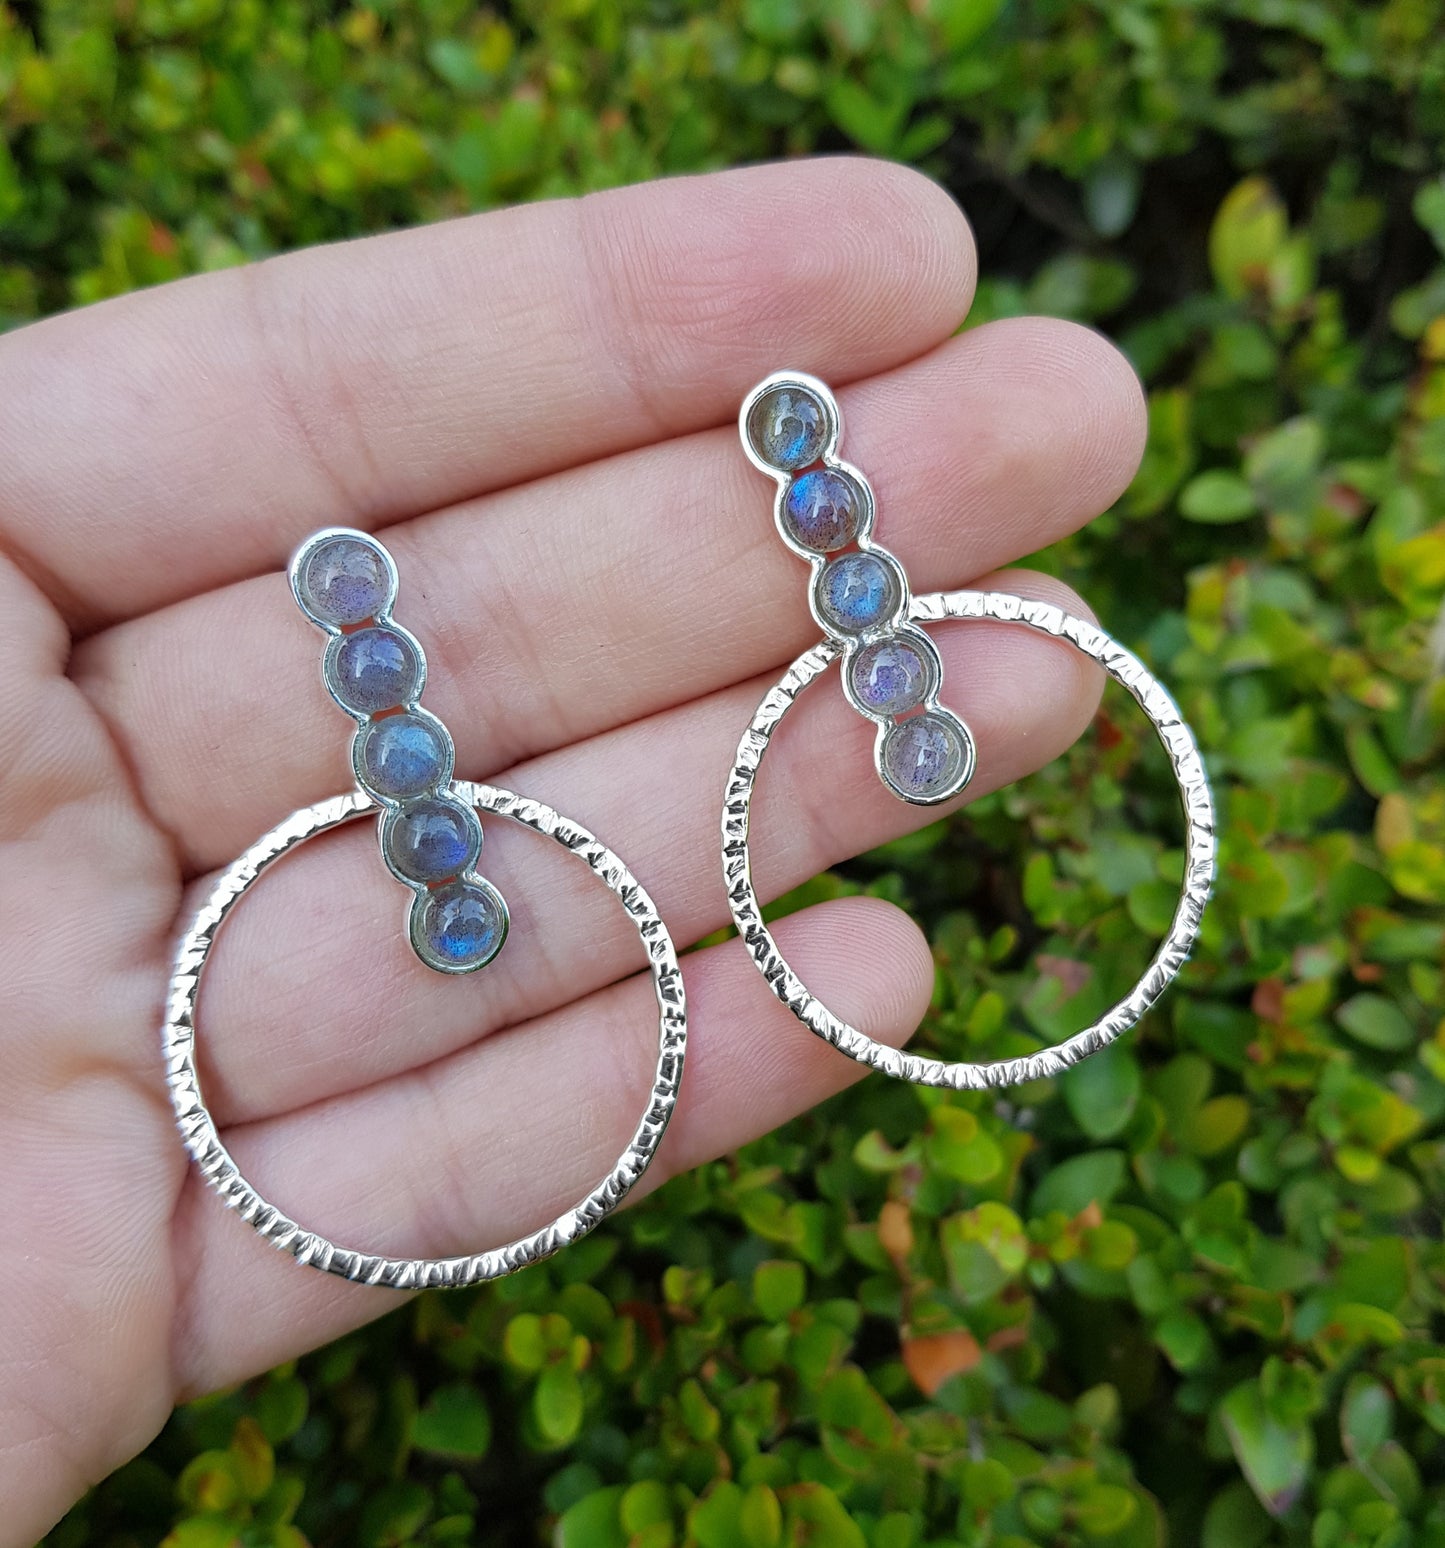 Labradorite Statement Earrings Sterling Silver Boho Earrings Stud Dangle Earrings Gypsy Jewelry Multi Gemstone Earrings Unique Gift For Her